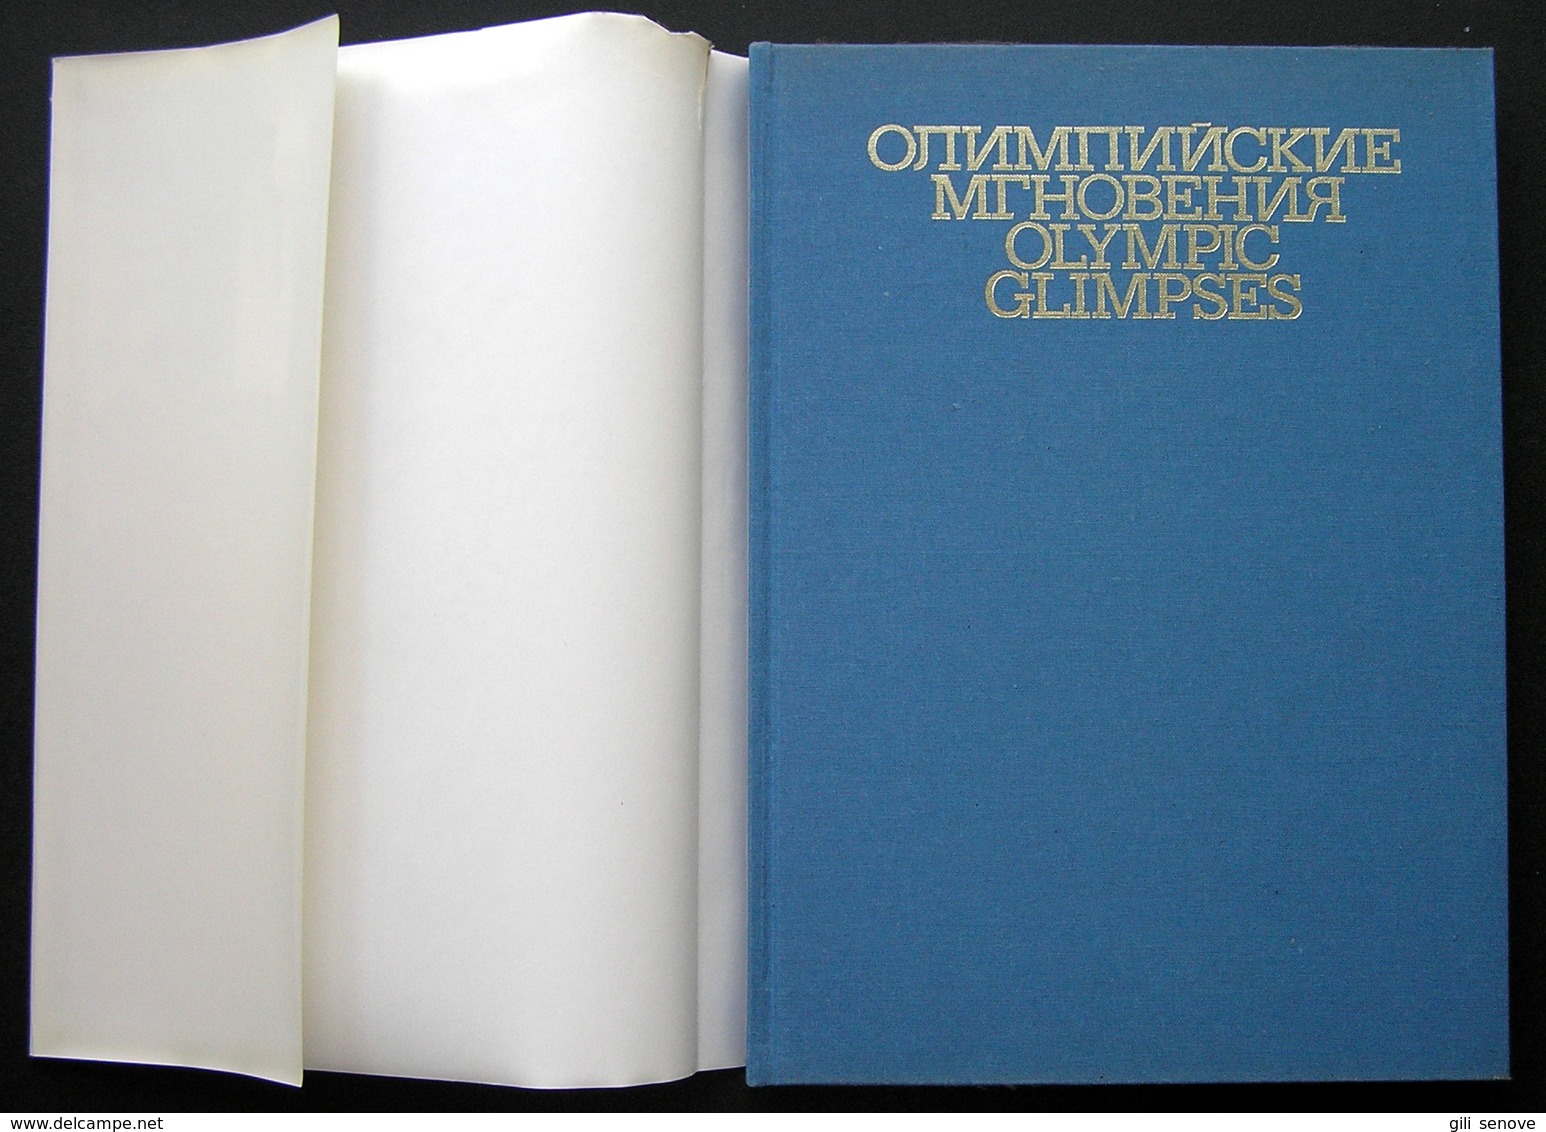 Олимпийские мгновения / Olympic Glimpses Photo Album 1981 - Slav Languages